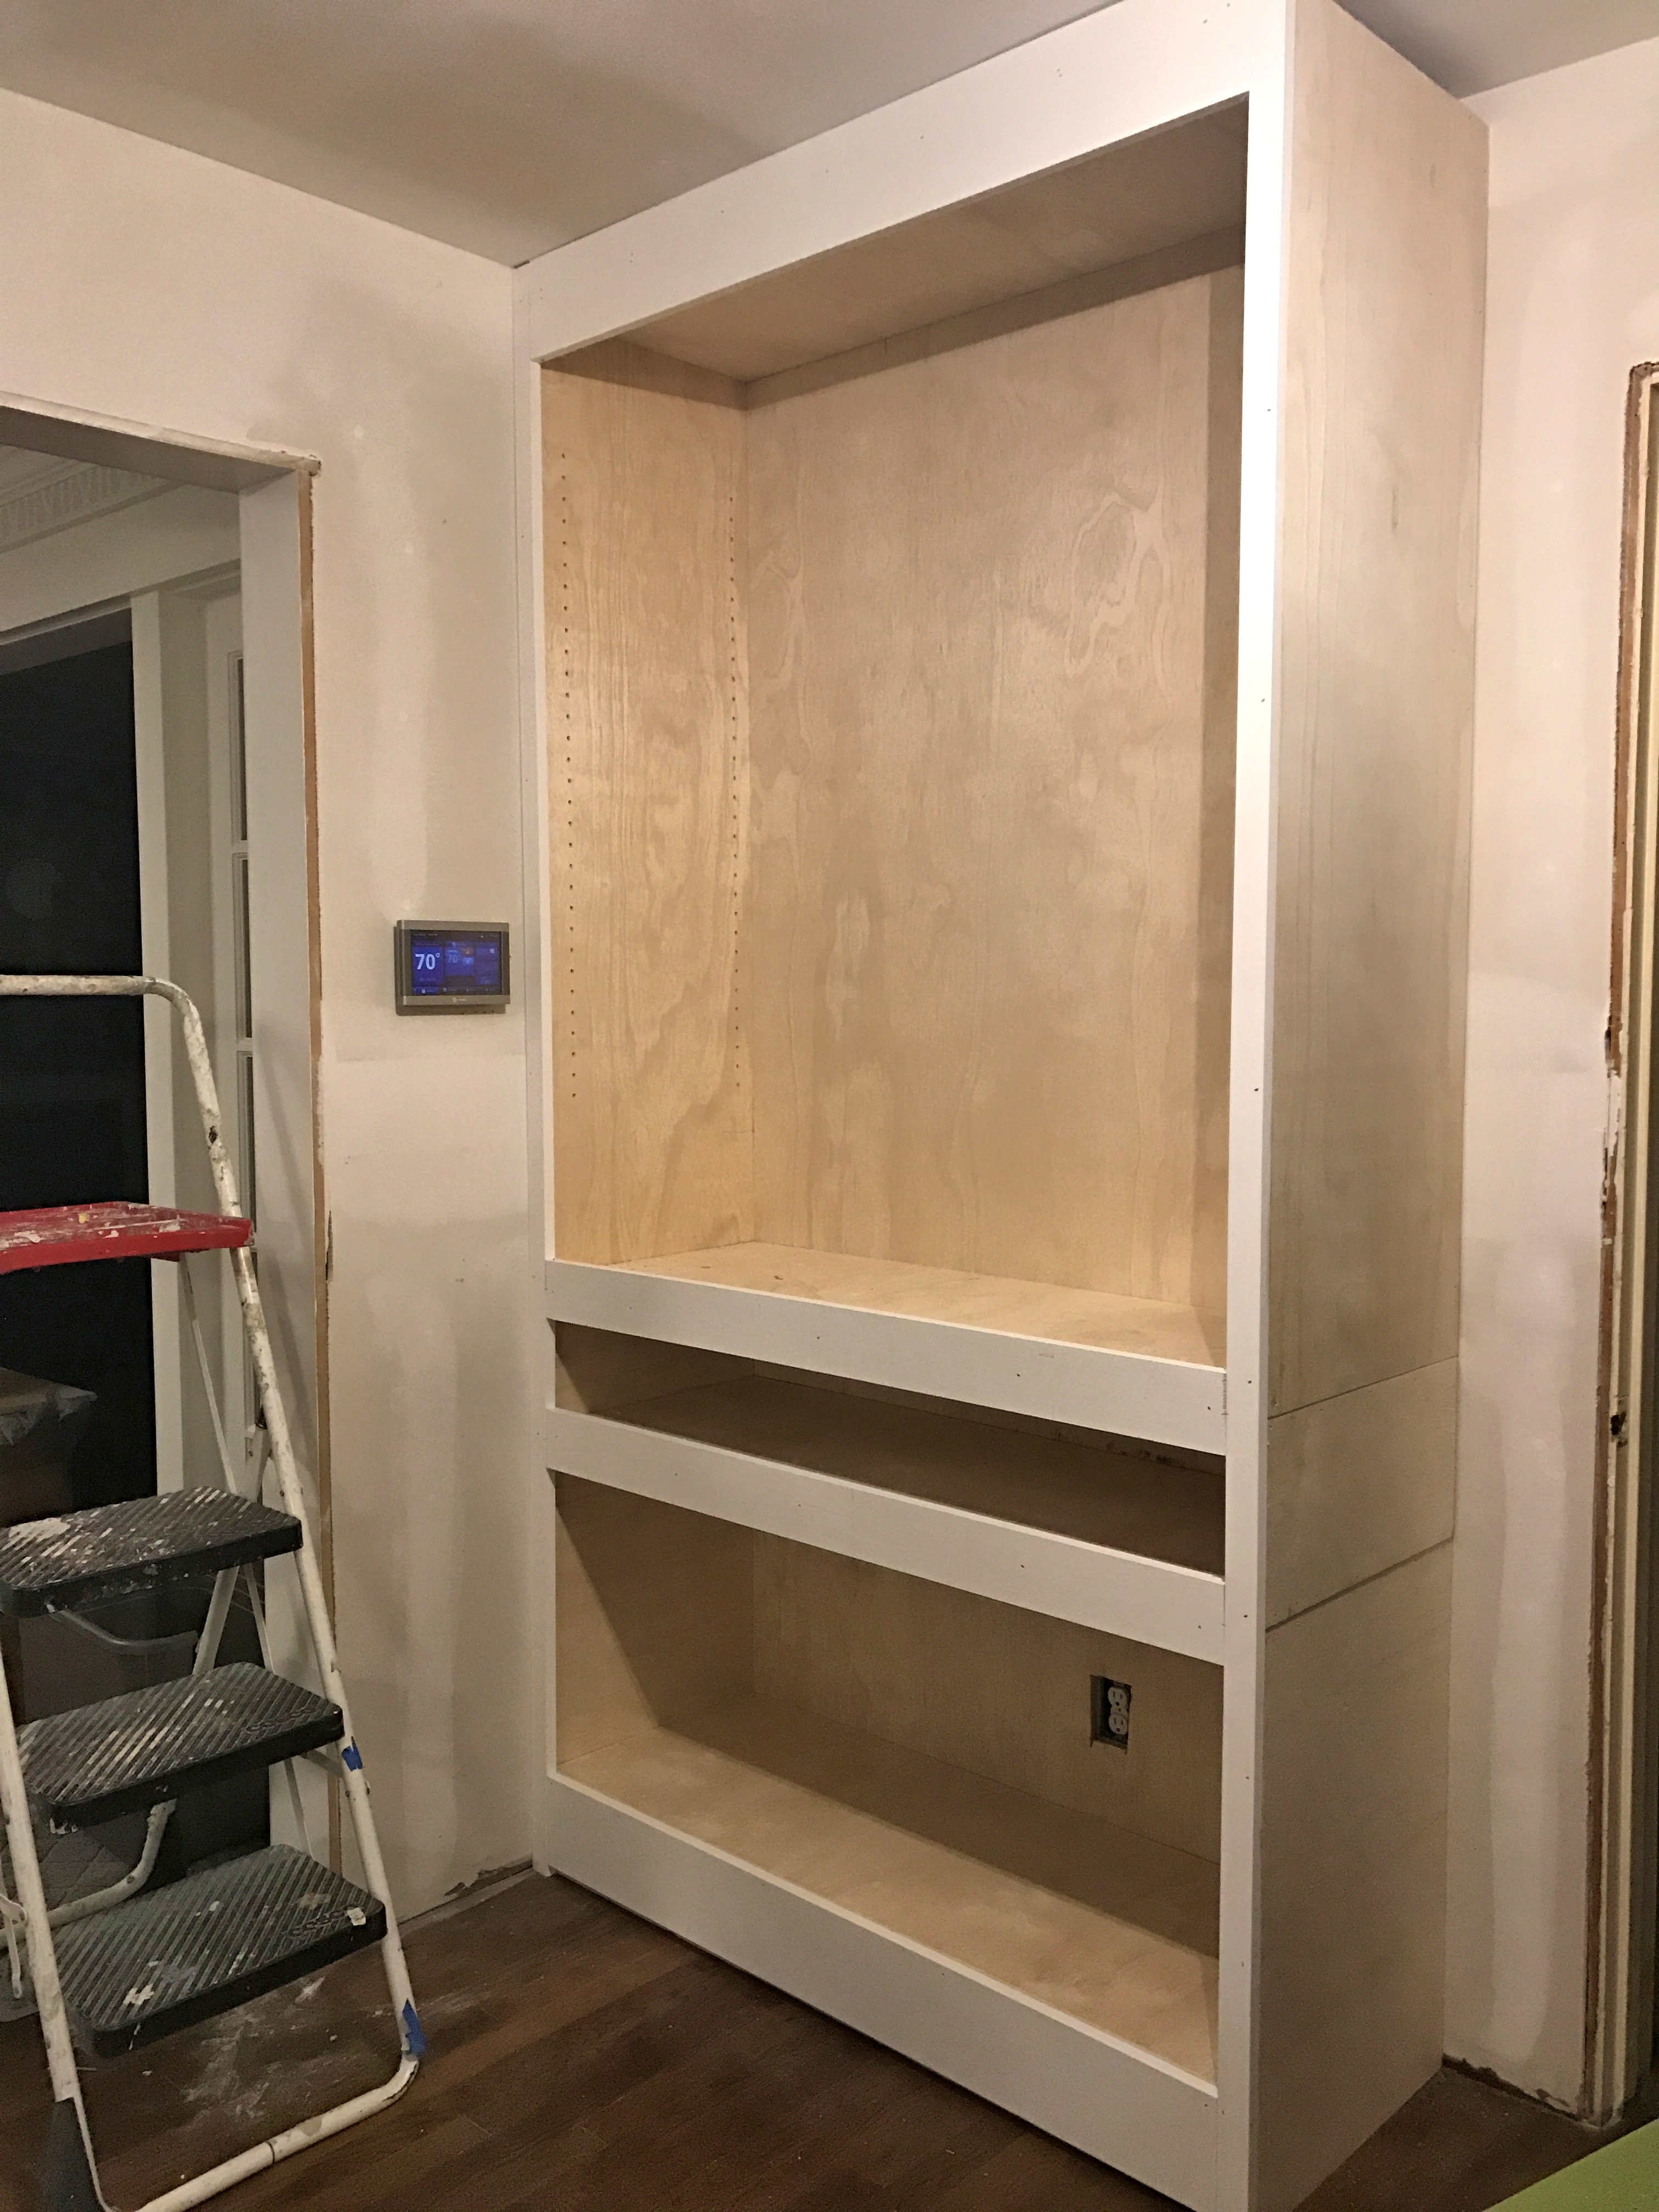 DIY Hallway Cabinets – Part 1